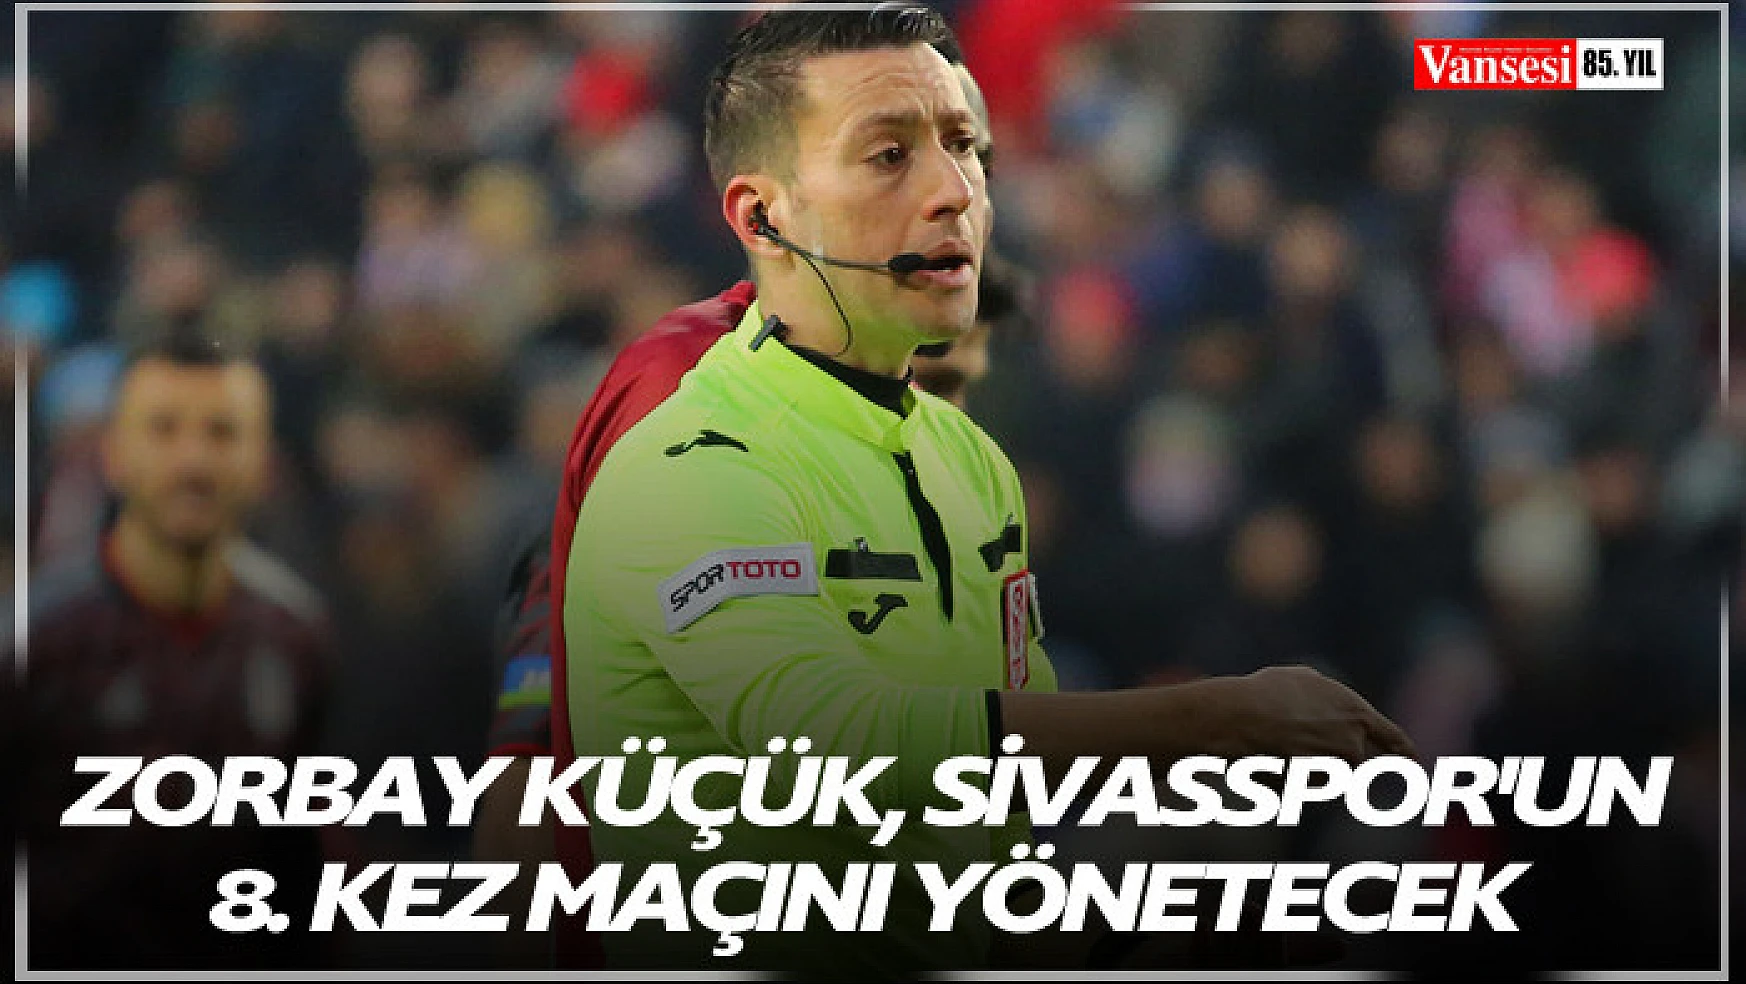 Zorbay Küçük, Sivasspor'un 8. kez maçını yönetecek